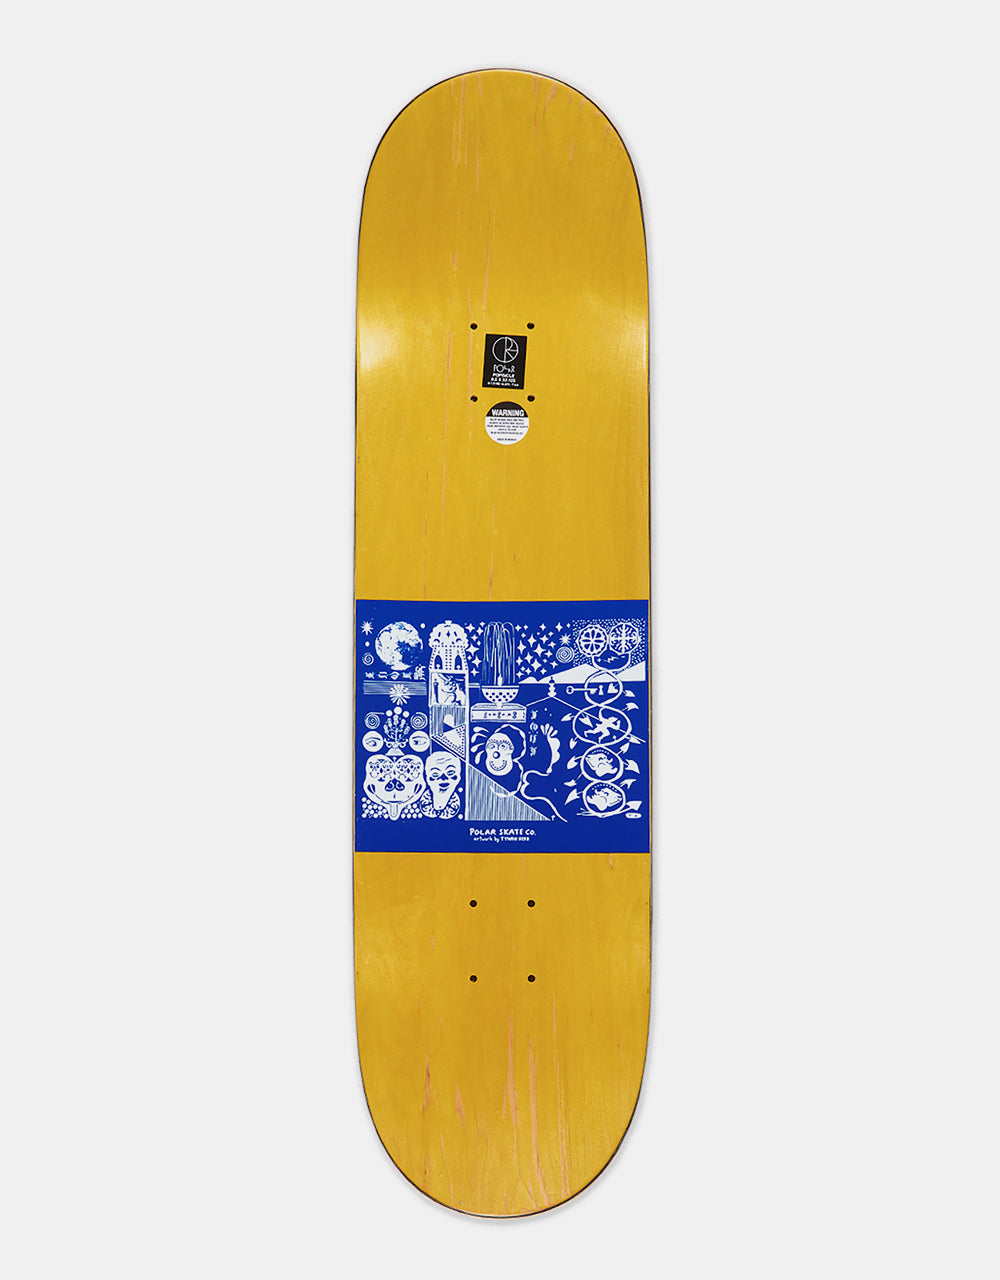 Polar Shin Sanbongi The Spiral of Life Skateboard Deck - Olive